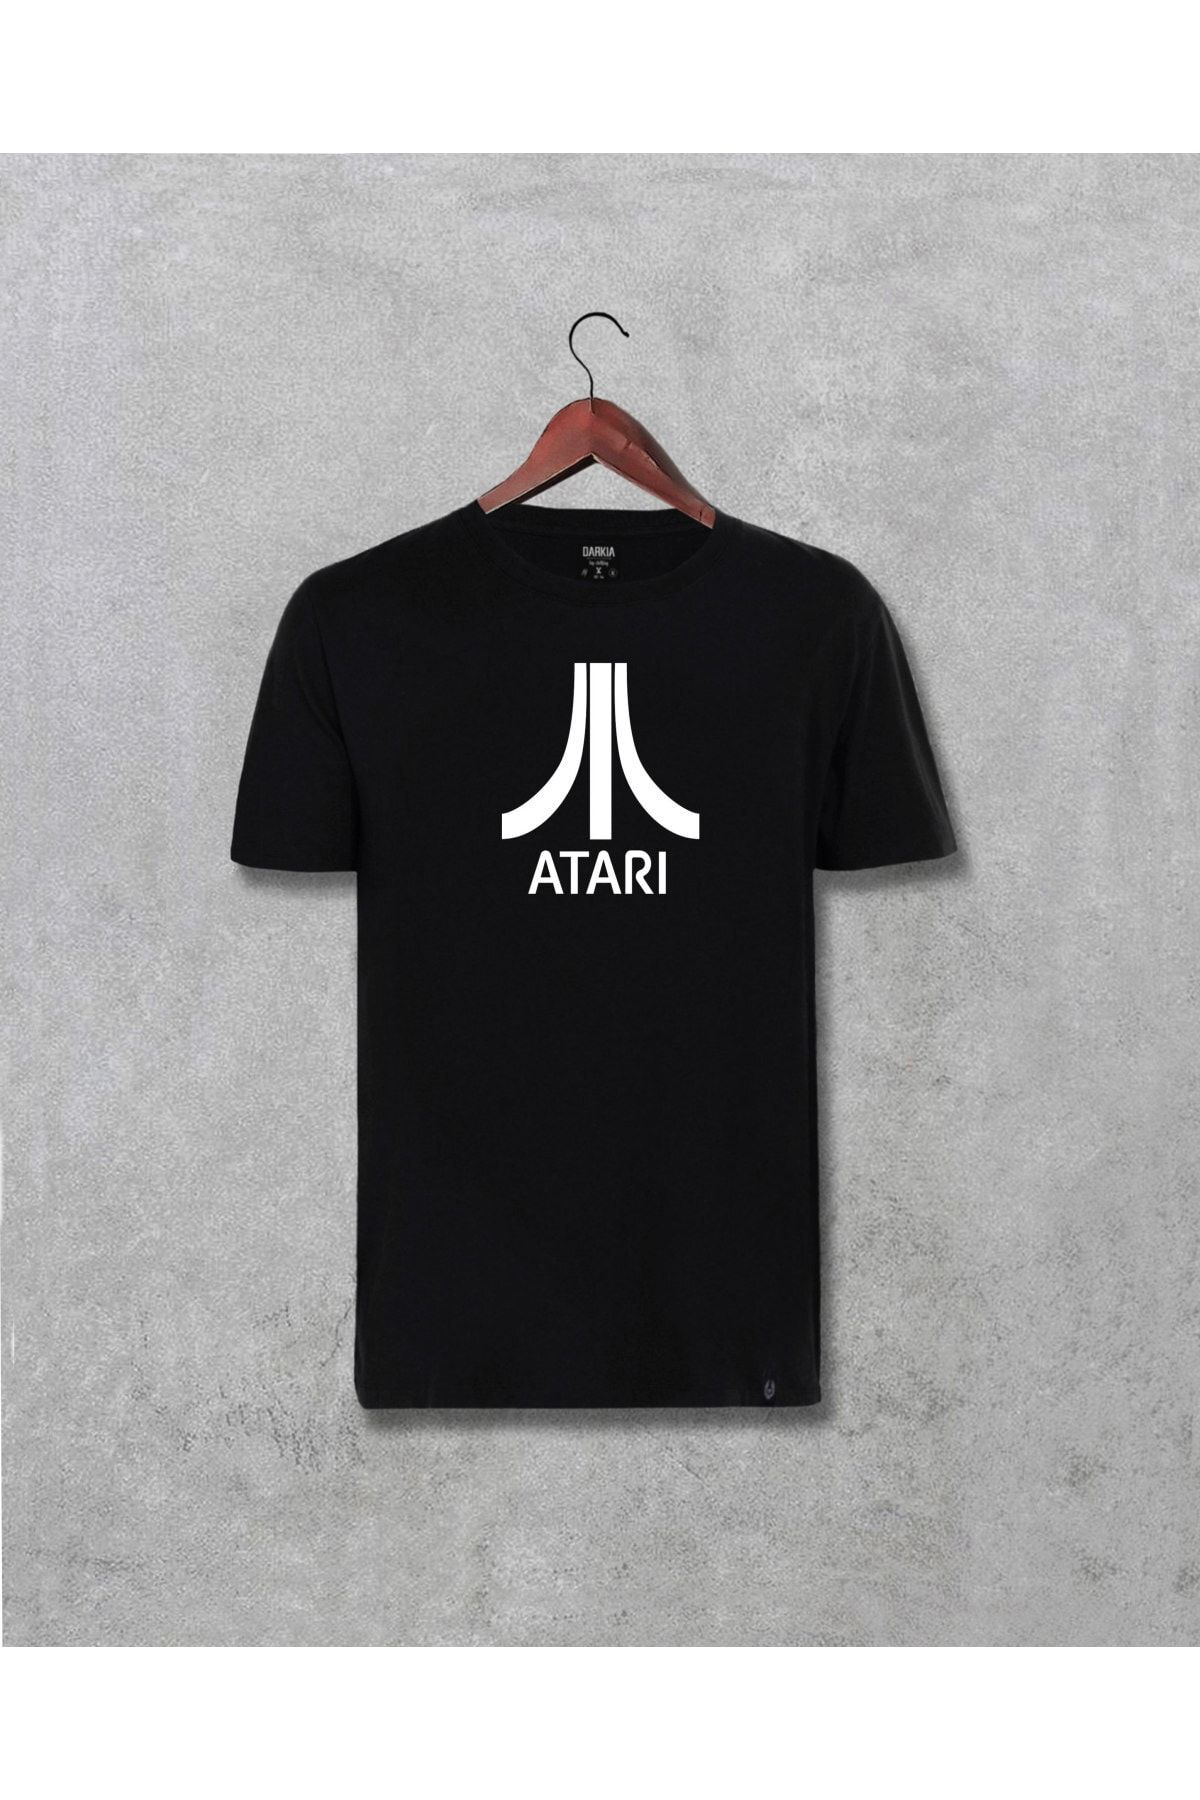 Darkia Atari Logo Tasarım Baskılı Unisex Tişört